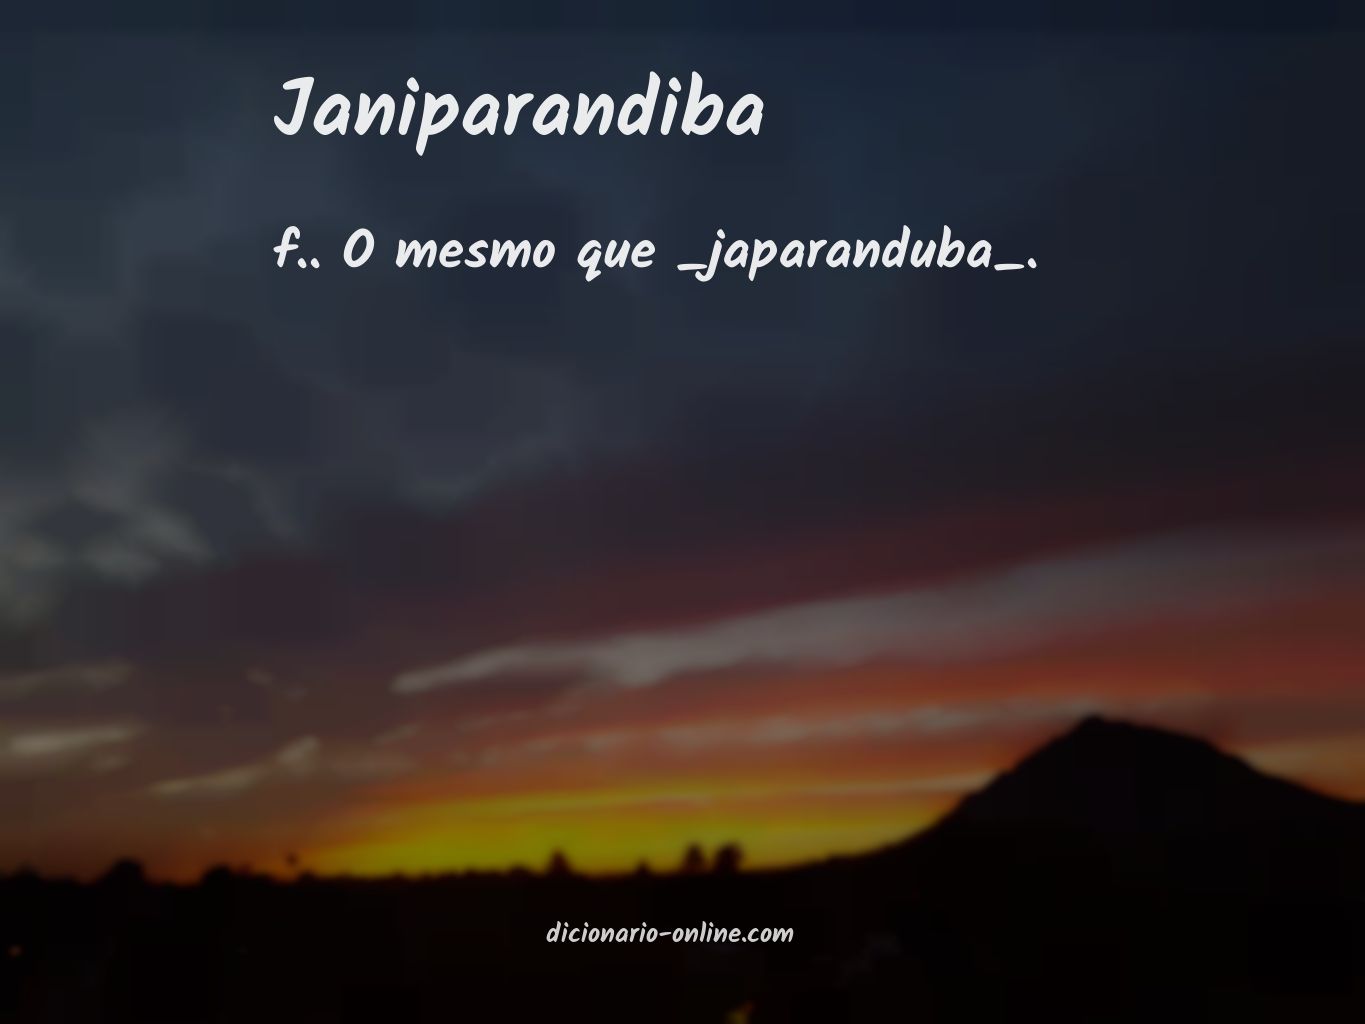 Significado de janiparandiba